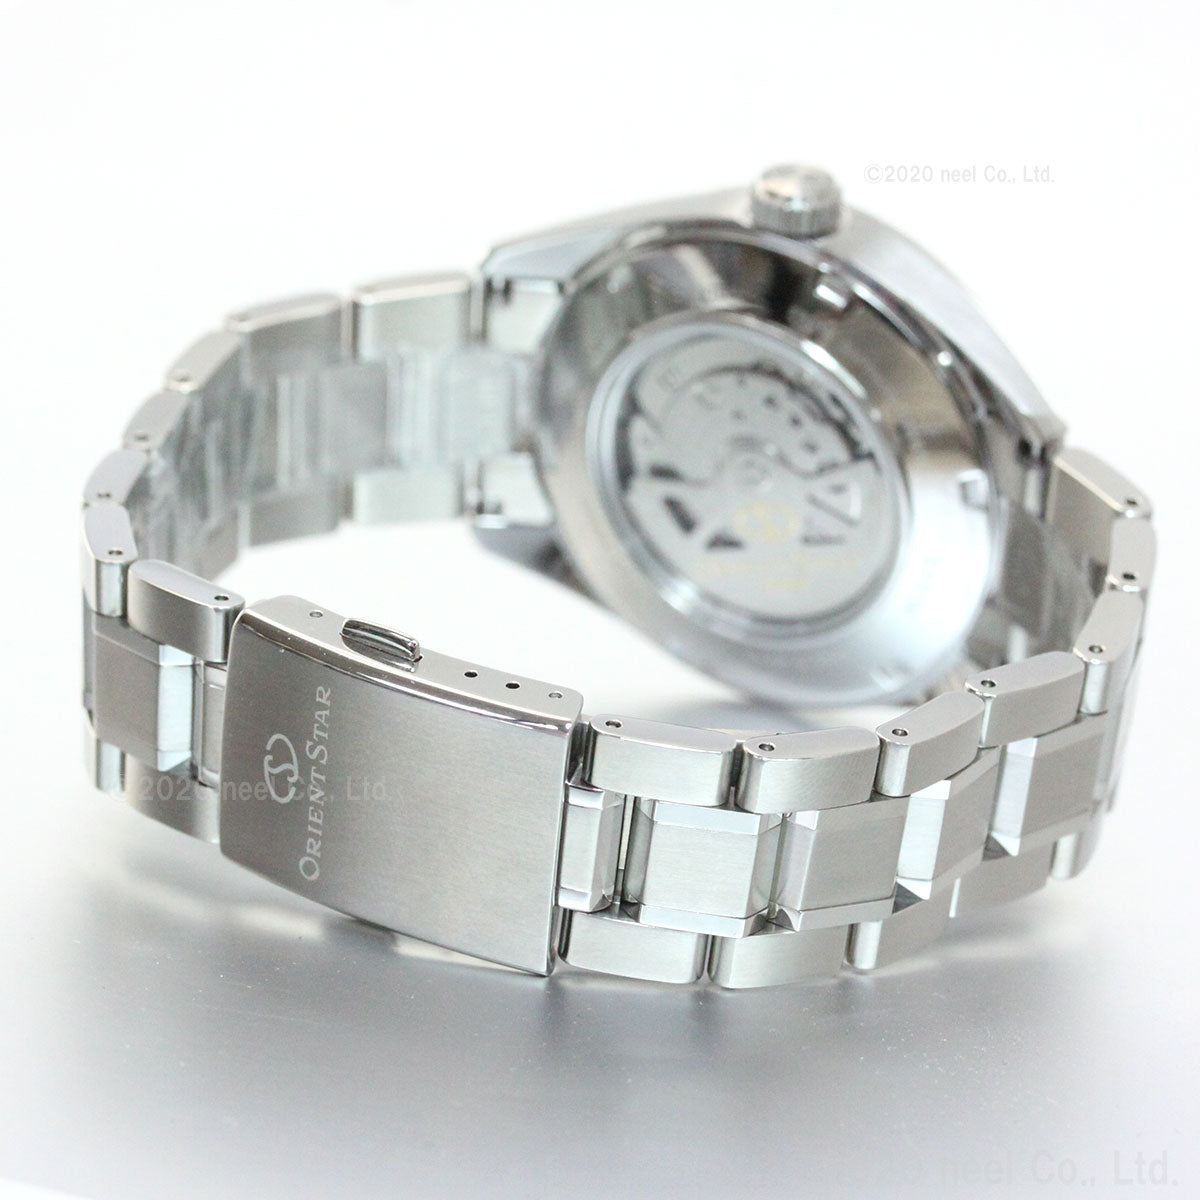 オリエントスター ORIENT STAR モダンスケルトン 腕時計 メンズ 自動巻き 機械式 コンテンポラリー RK-AV0114E